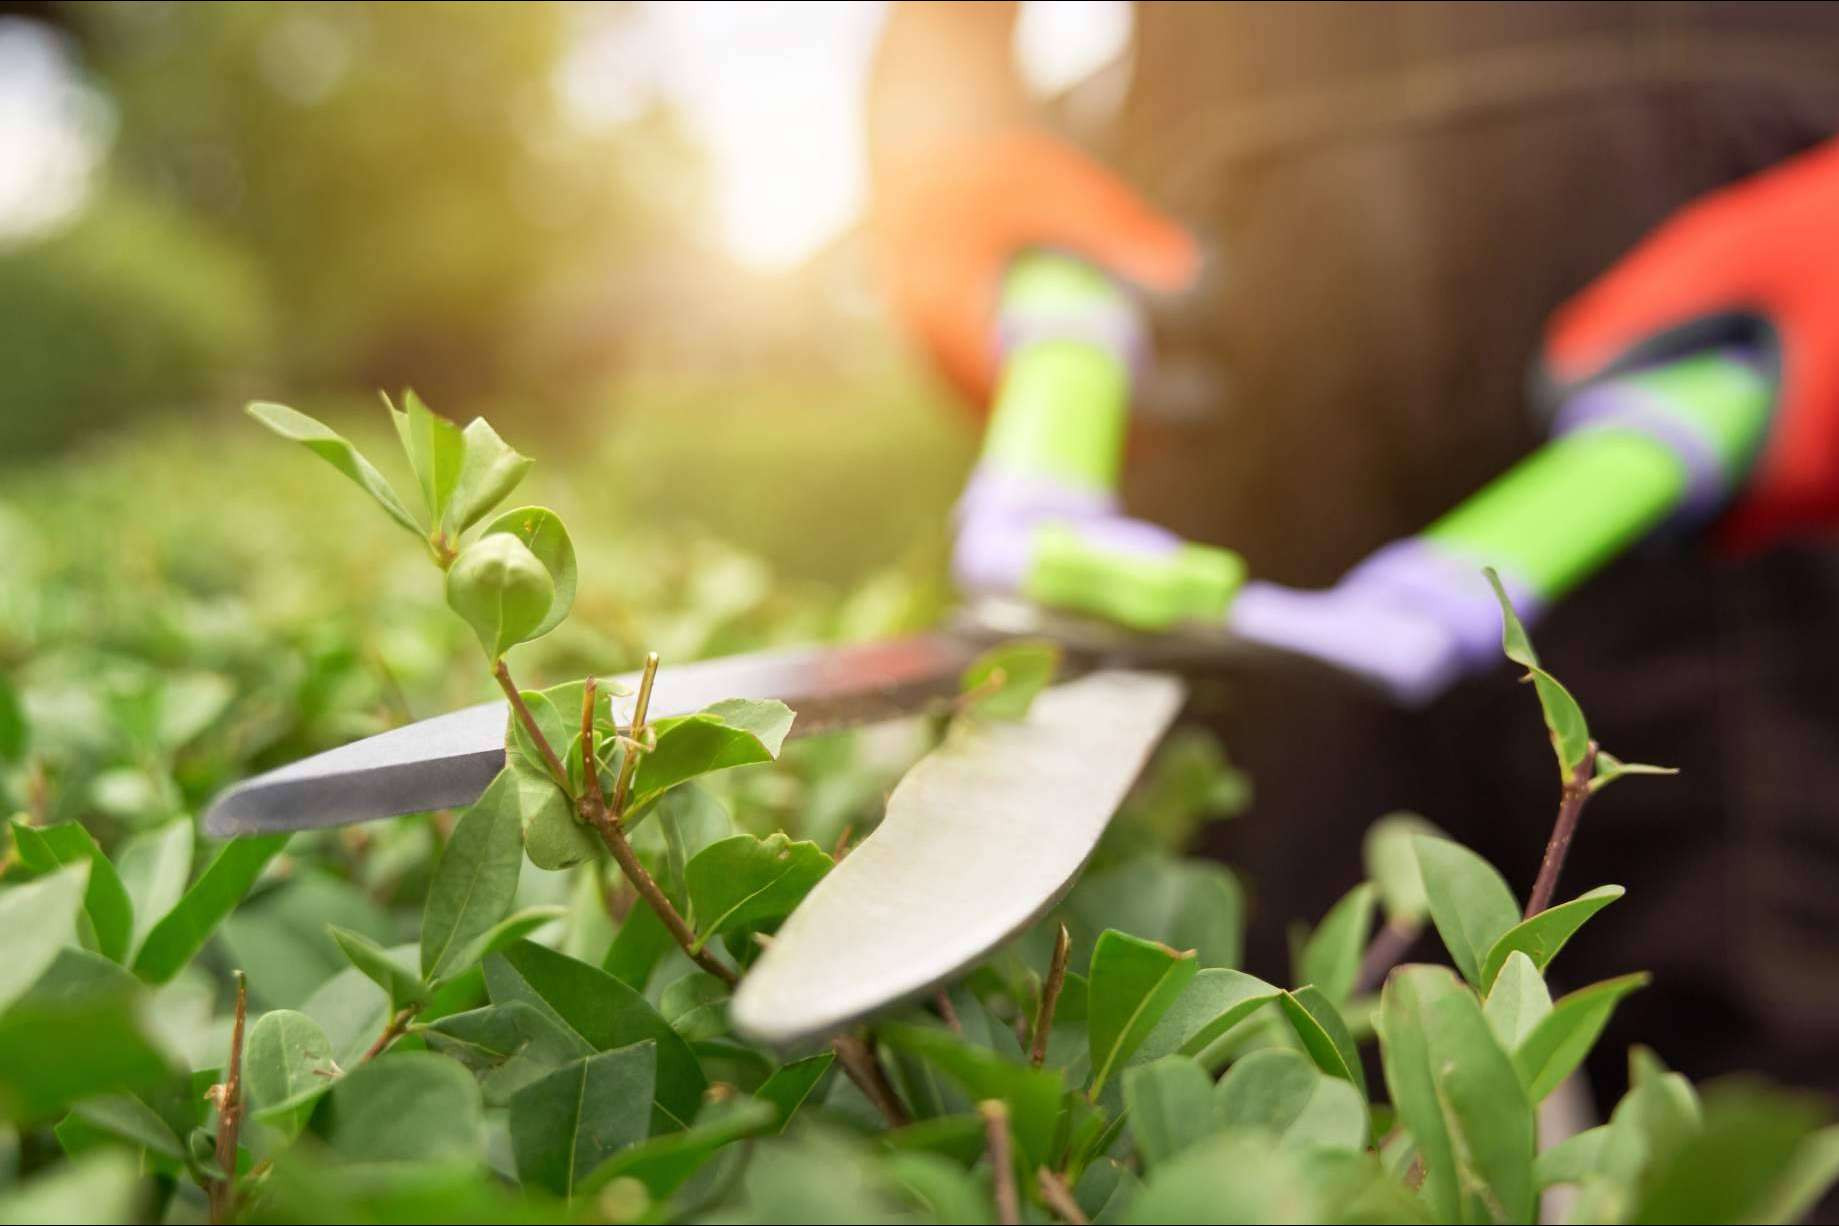  Modrego Hogar, amplio catálogo de herramientas de jardín para eliminar las malas hierbas 